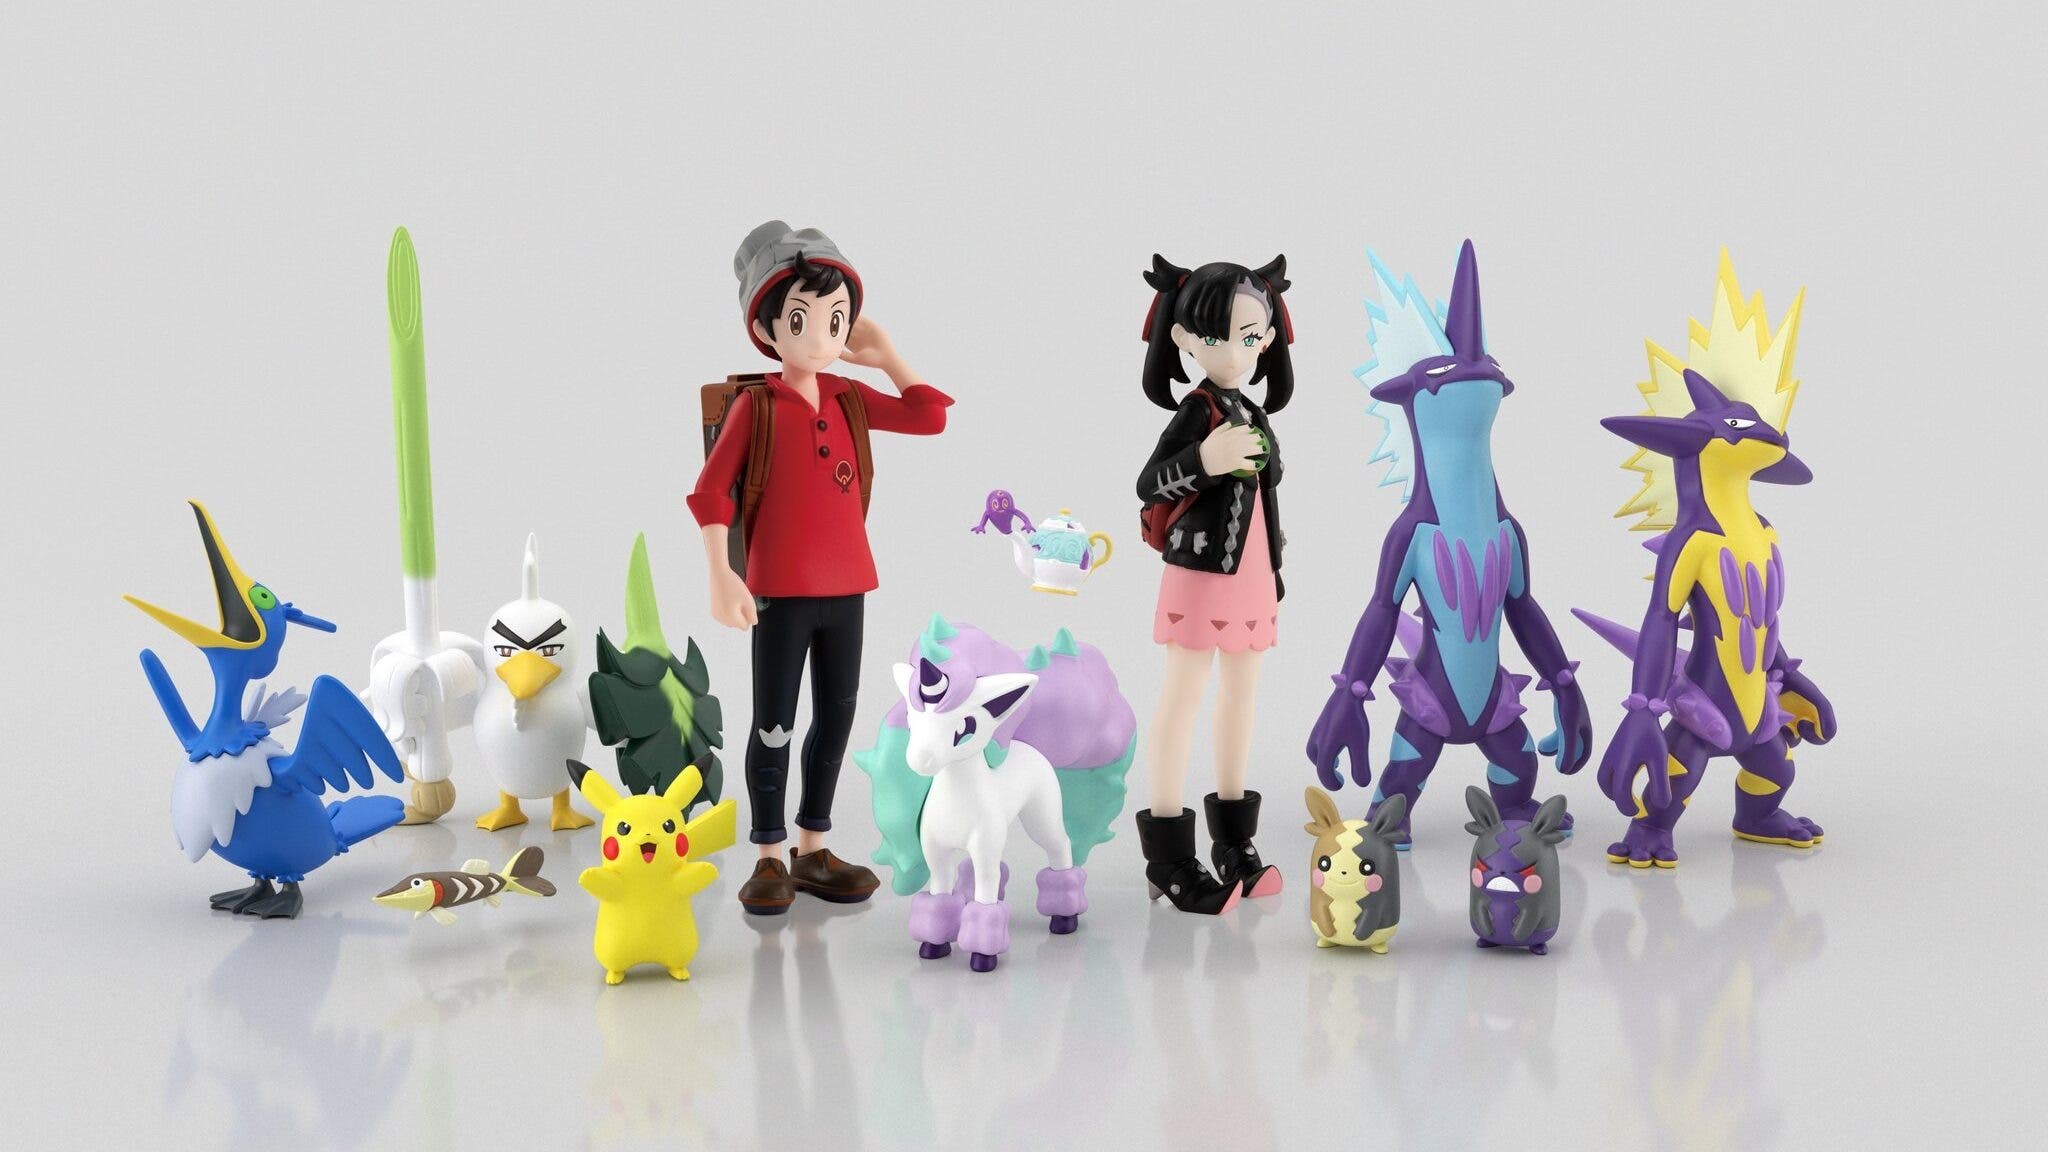 Echad un vistazo a las nuevas figuras de la colección Pokémon Scale World lanzadas en Japón